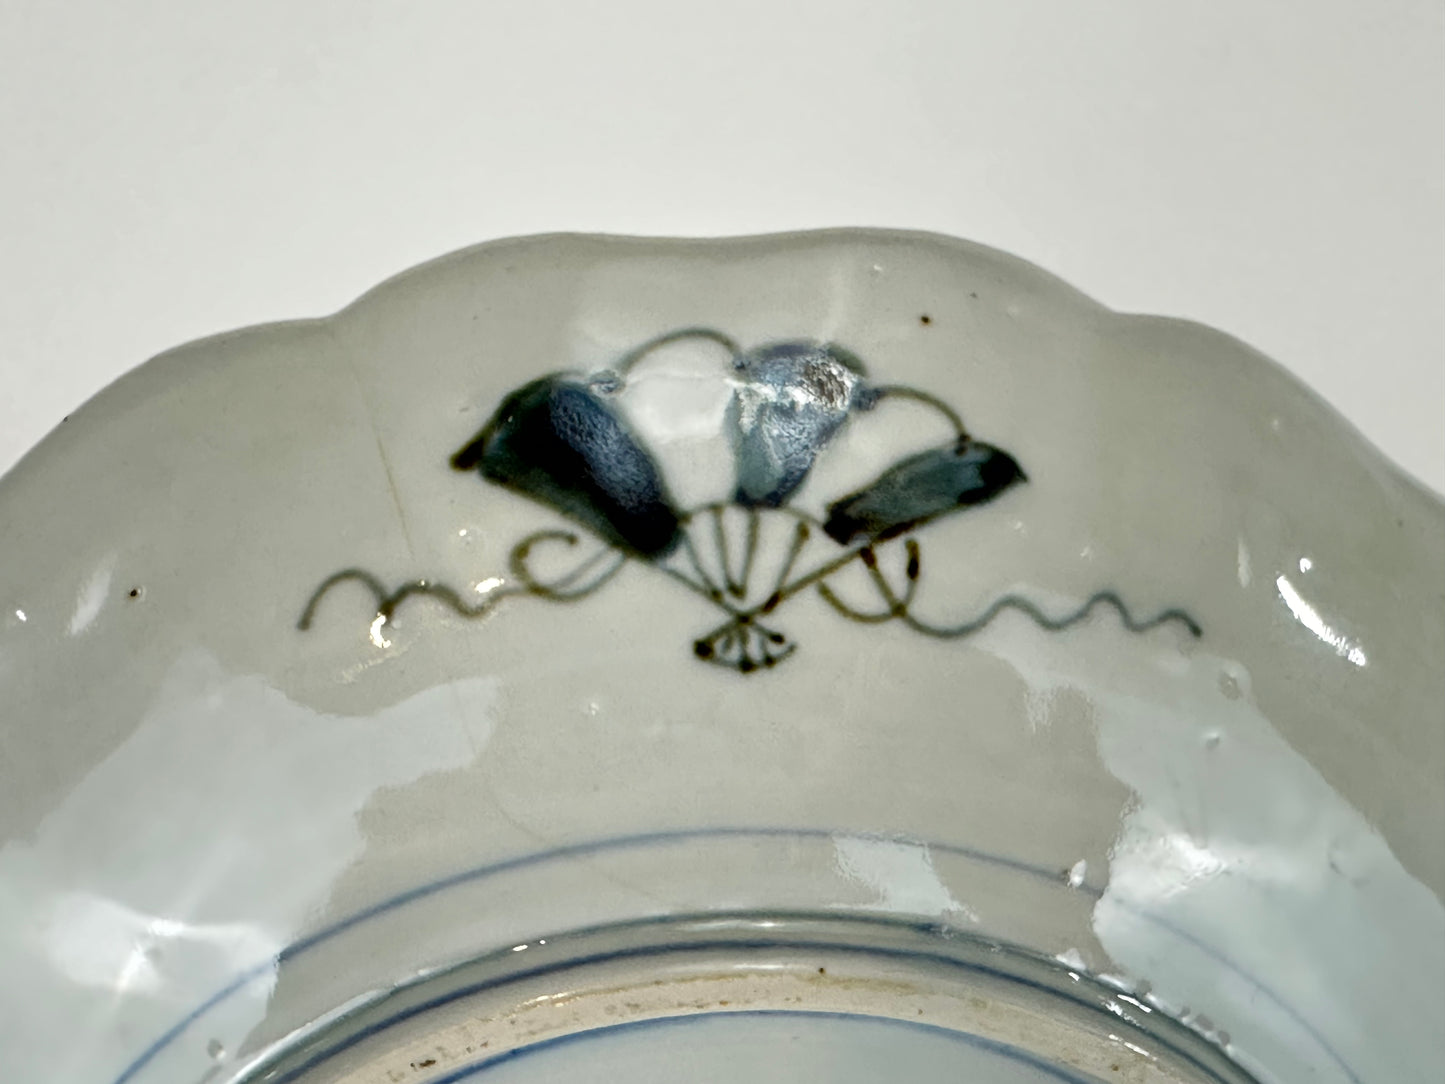 Antique Japanese 19thC Imari Ceramic Plate Hawk & Fan 9.5"